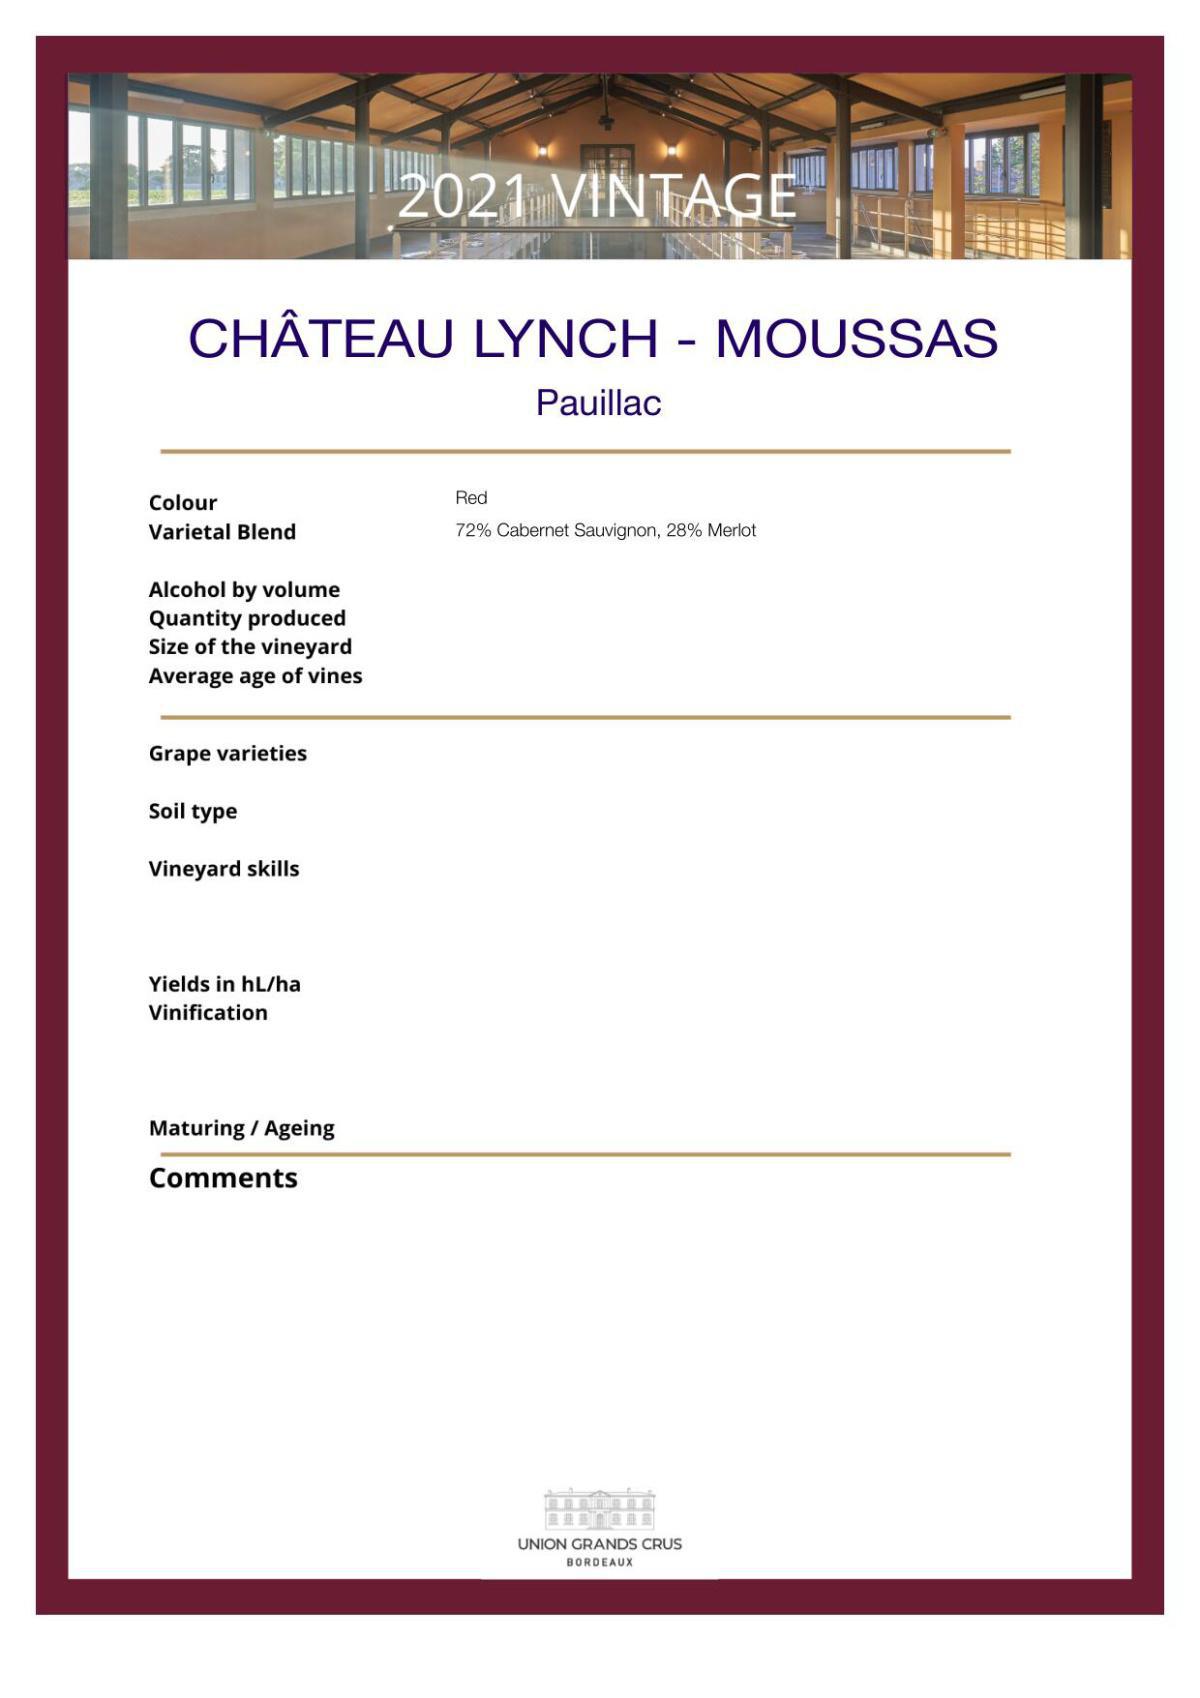 Château Lynch - Moussas